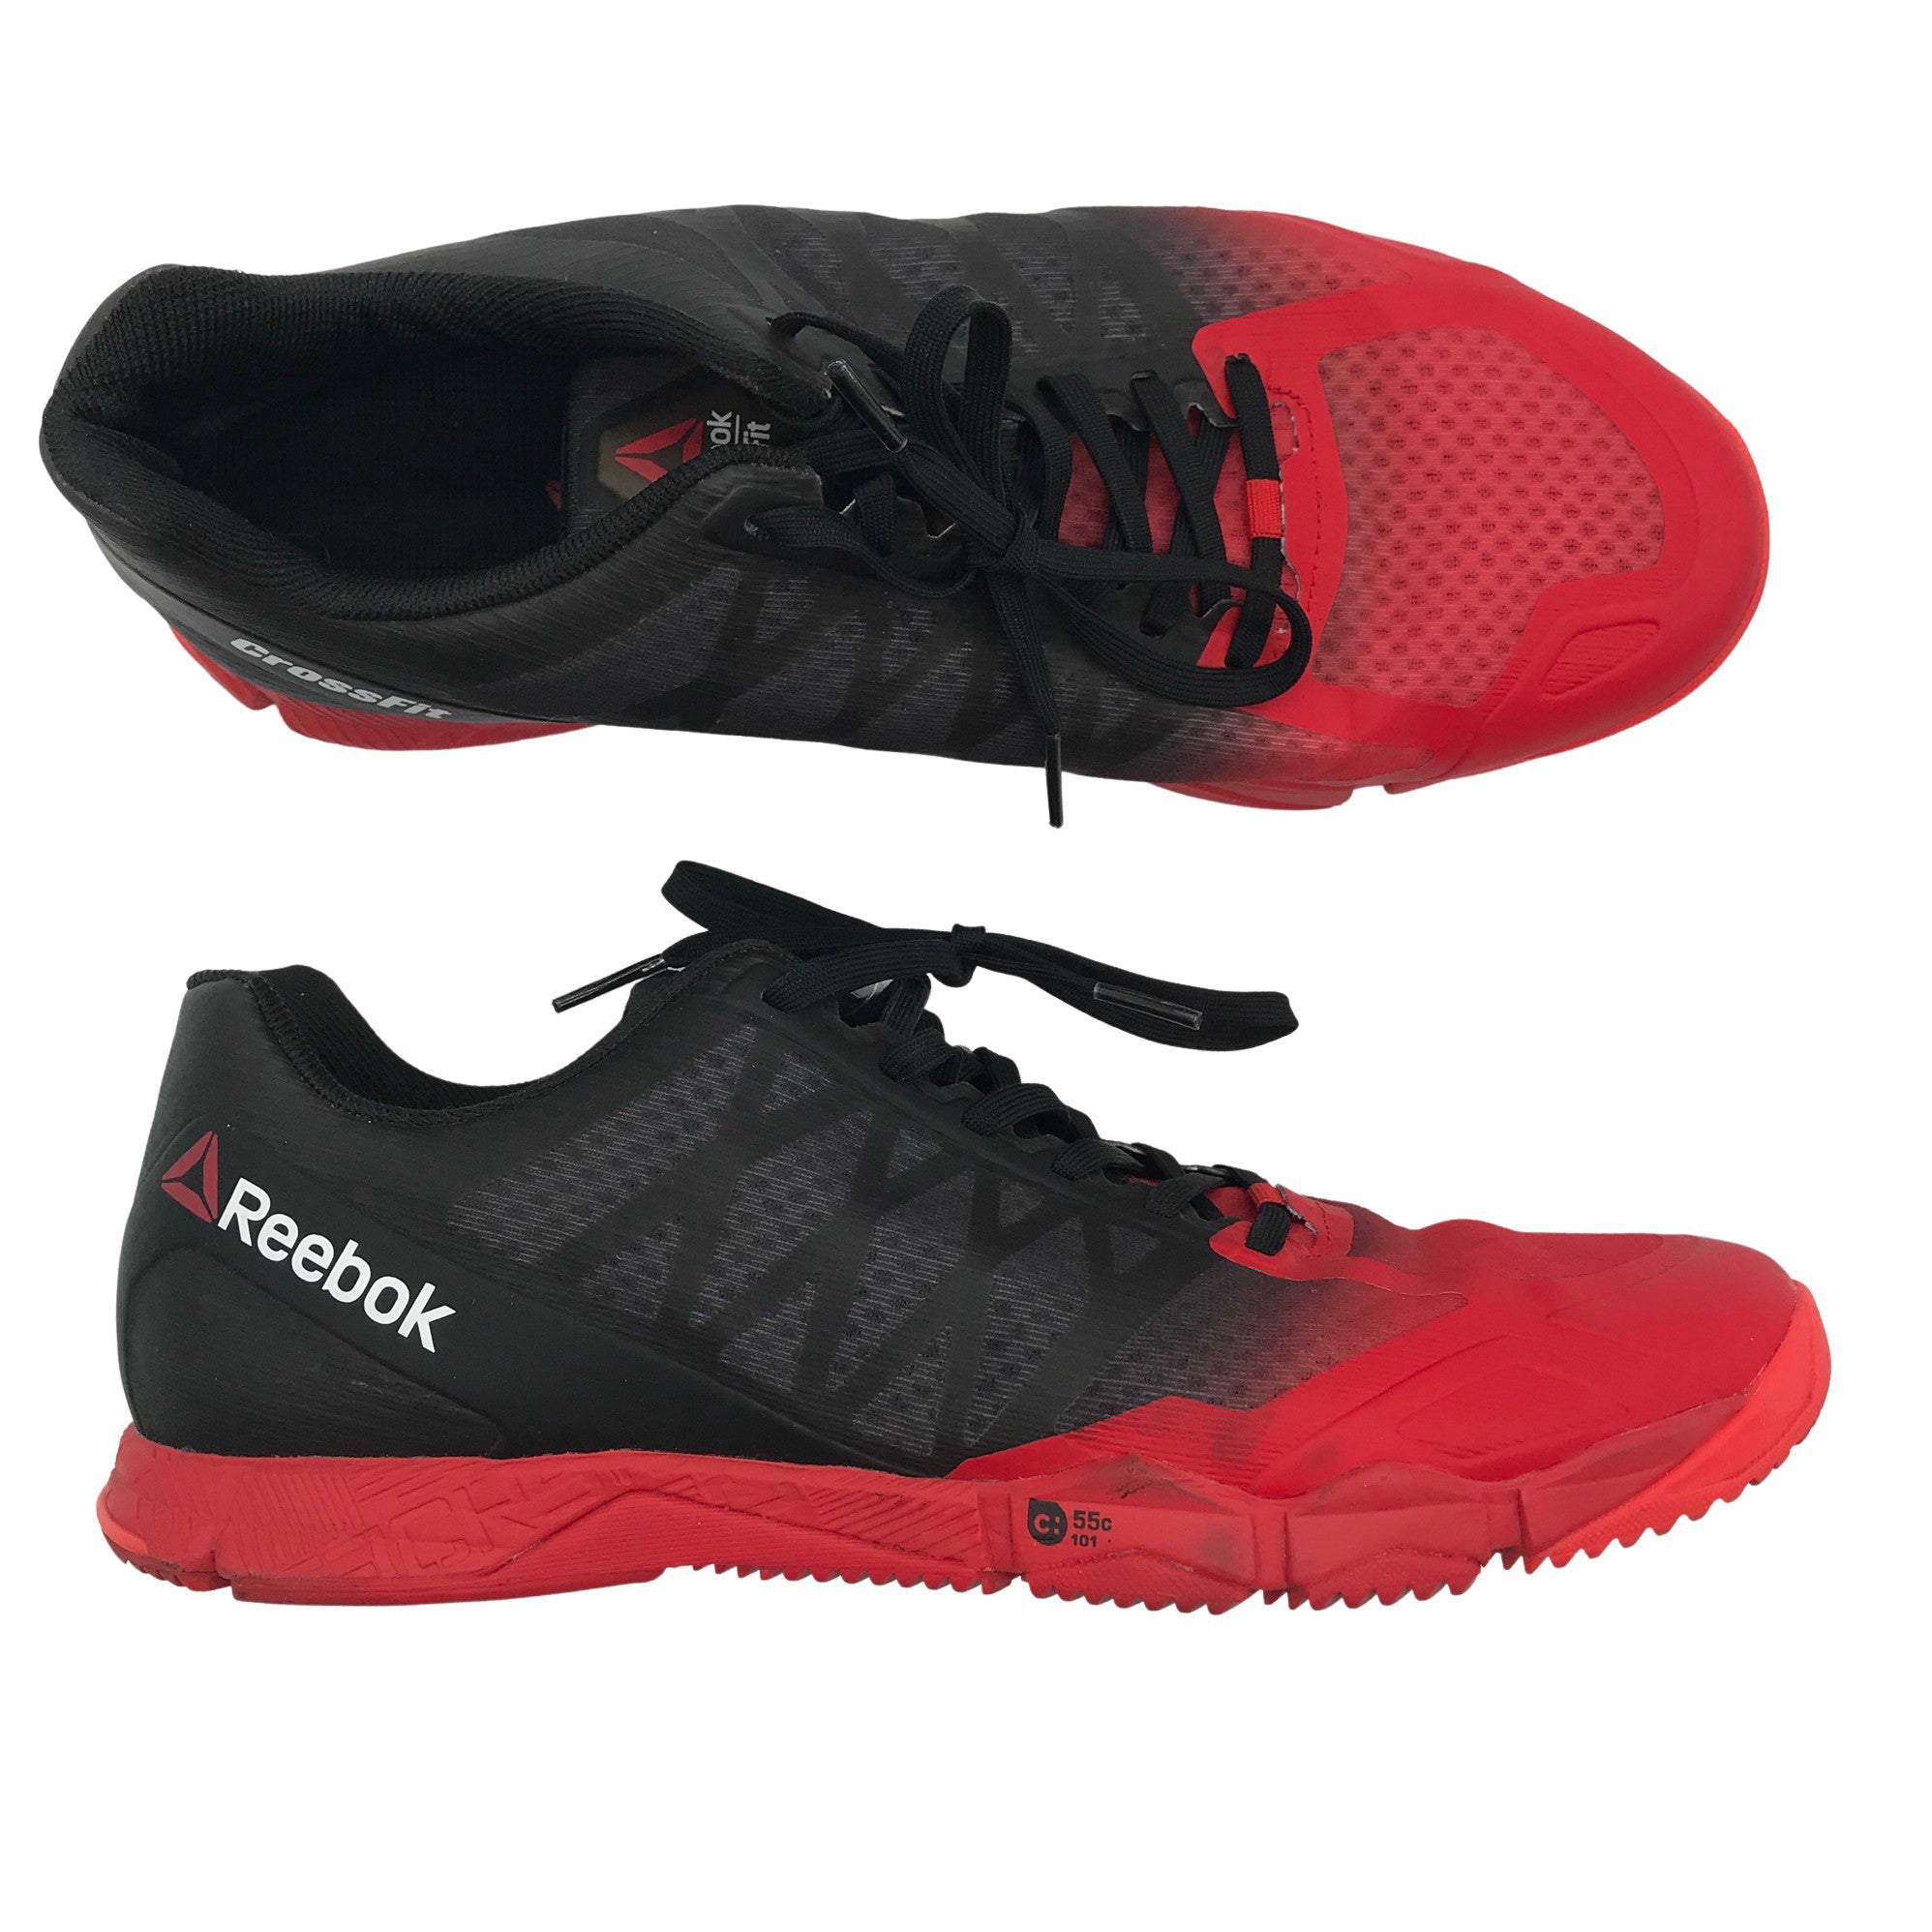 Men's Reebok Indoor sports shoes, size 42